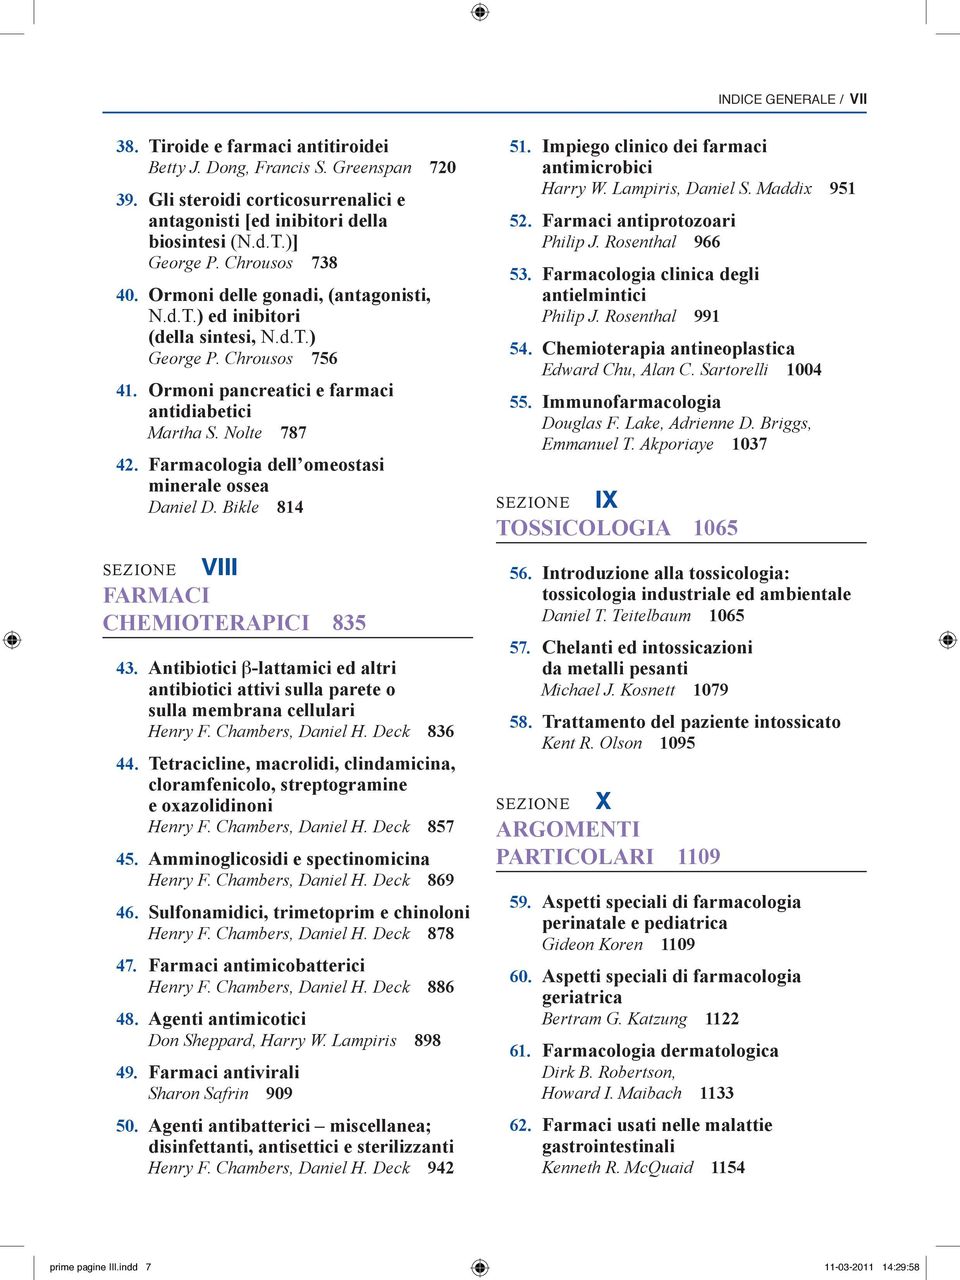 Farmacologia dell omeostasi minerale ossea Daniel D. Bikle 814 sezion e VIII FARMACI CHEMIOTERAPICI 835 43.